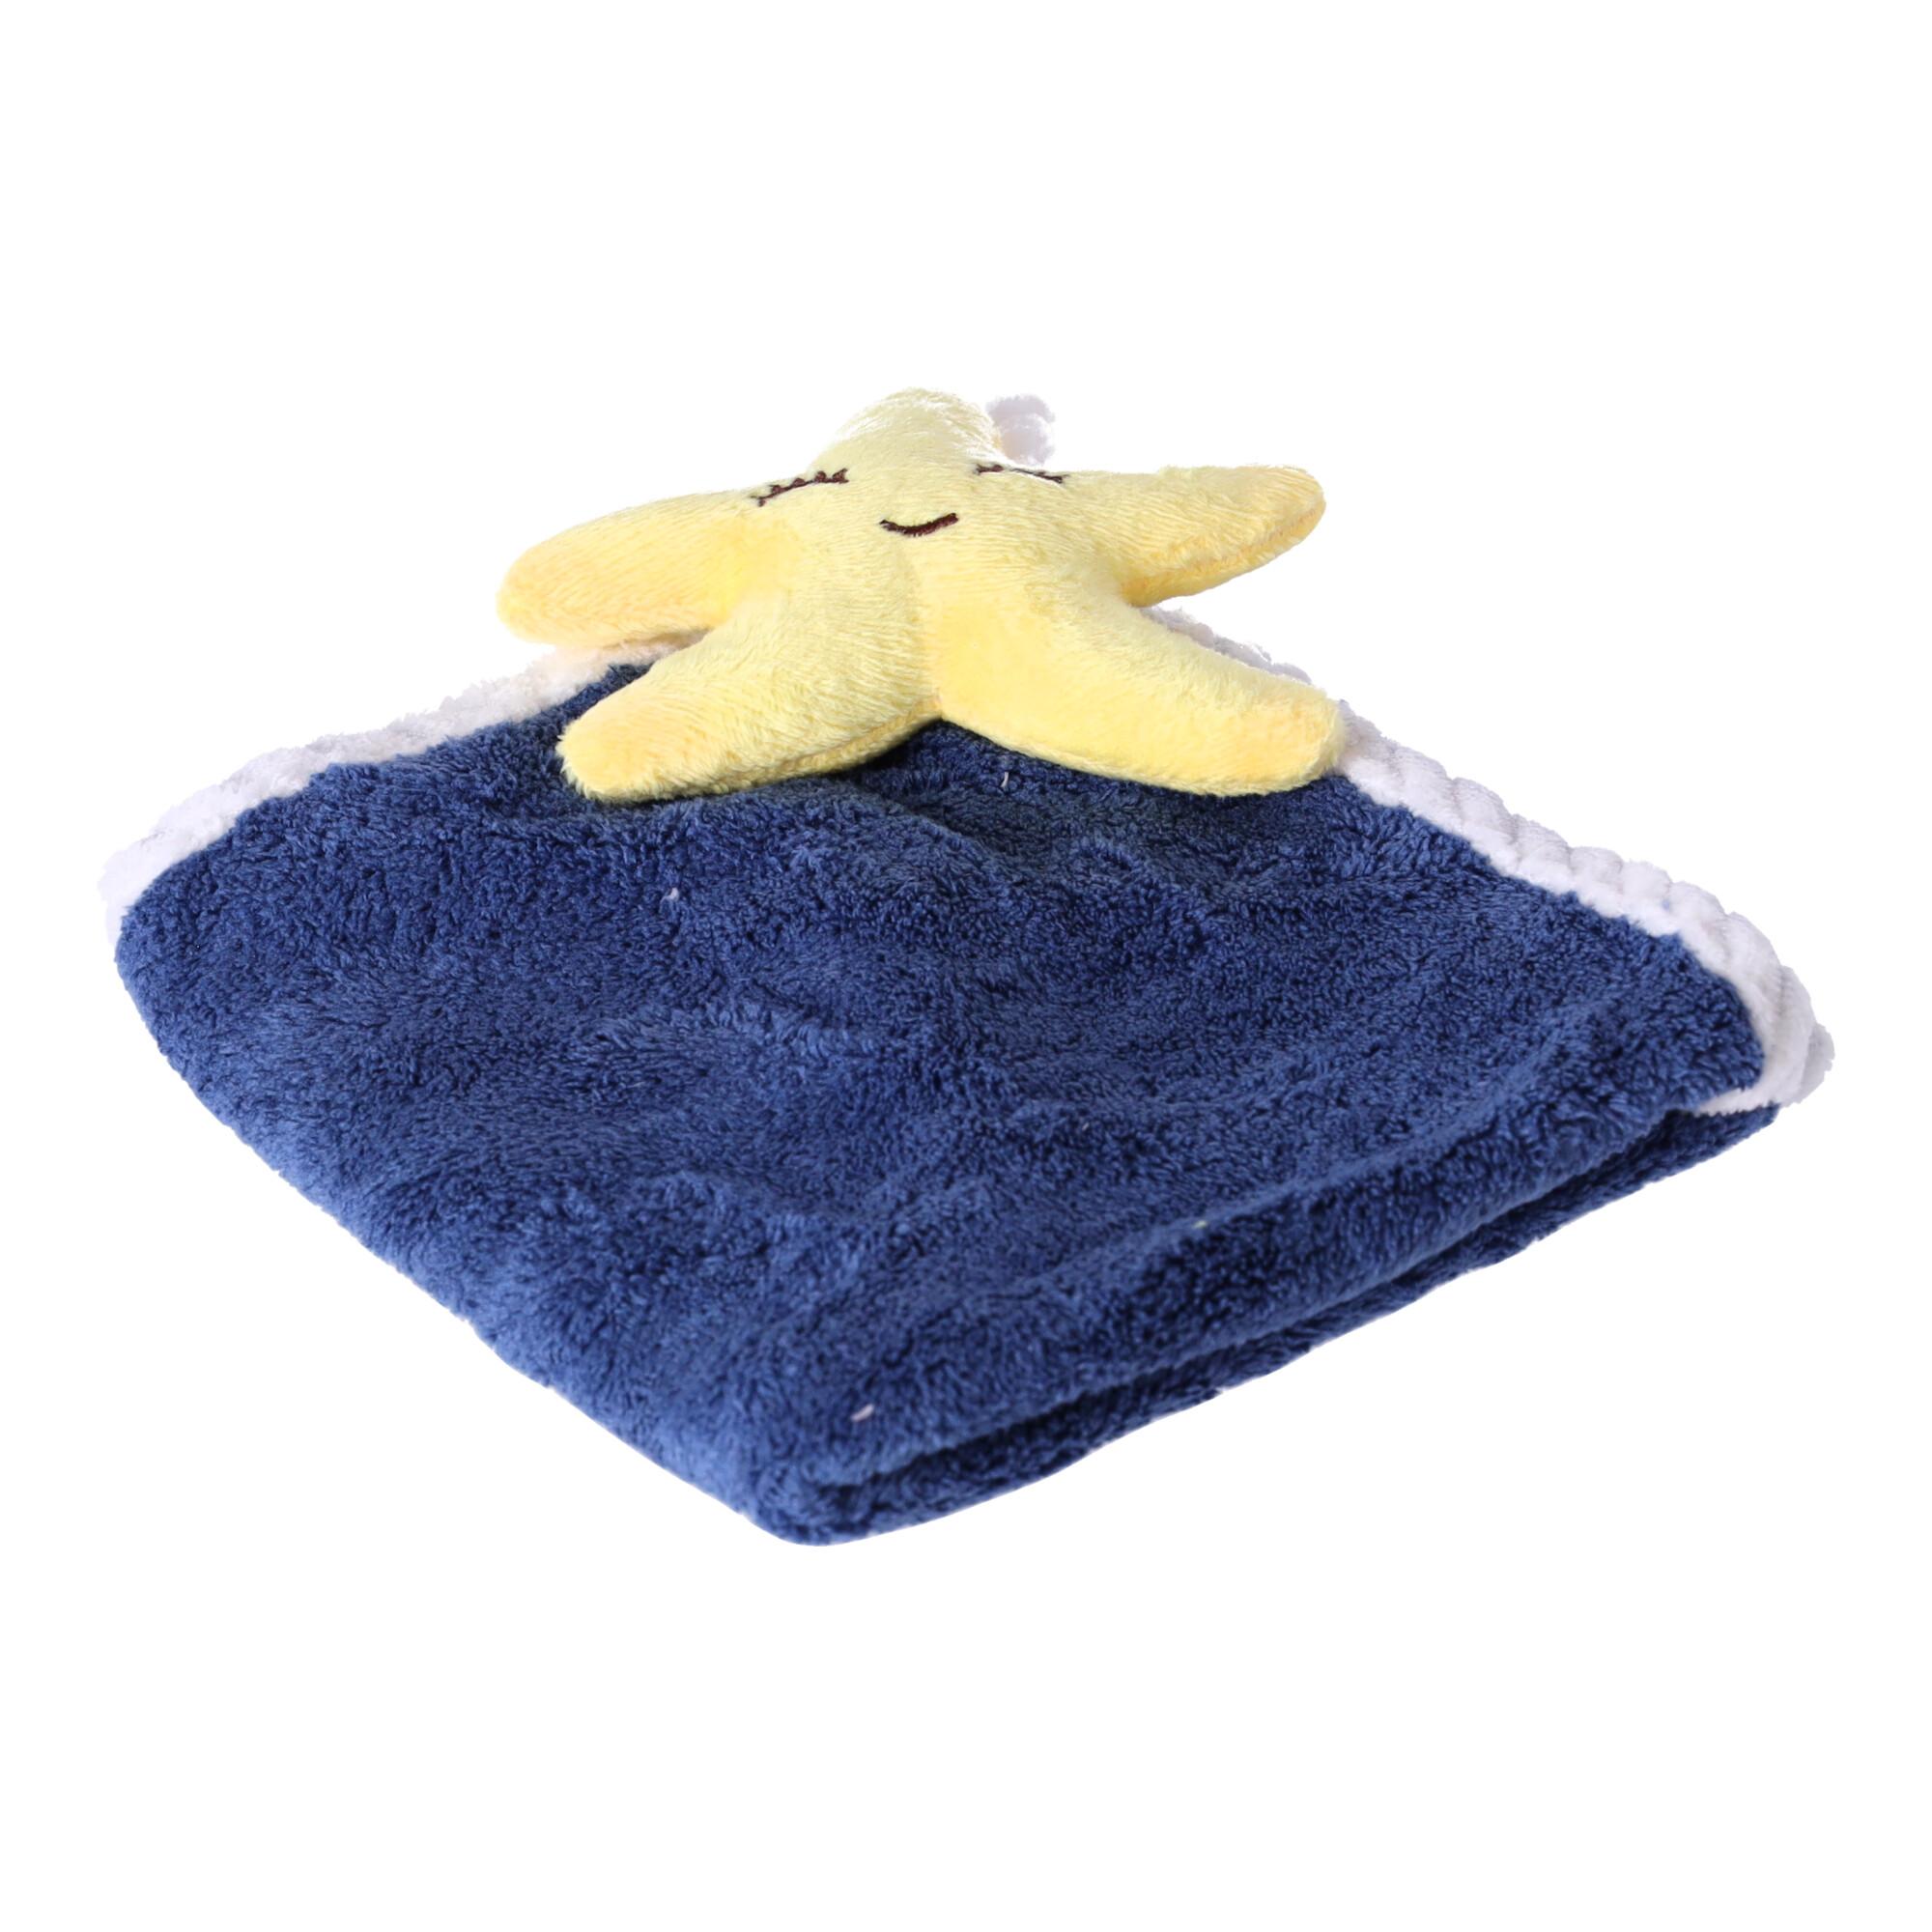 Cute kitchen towel - dark blue